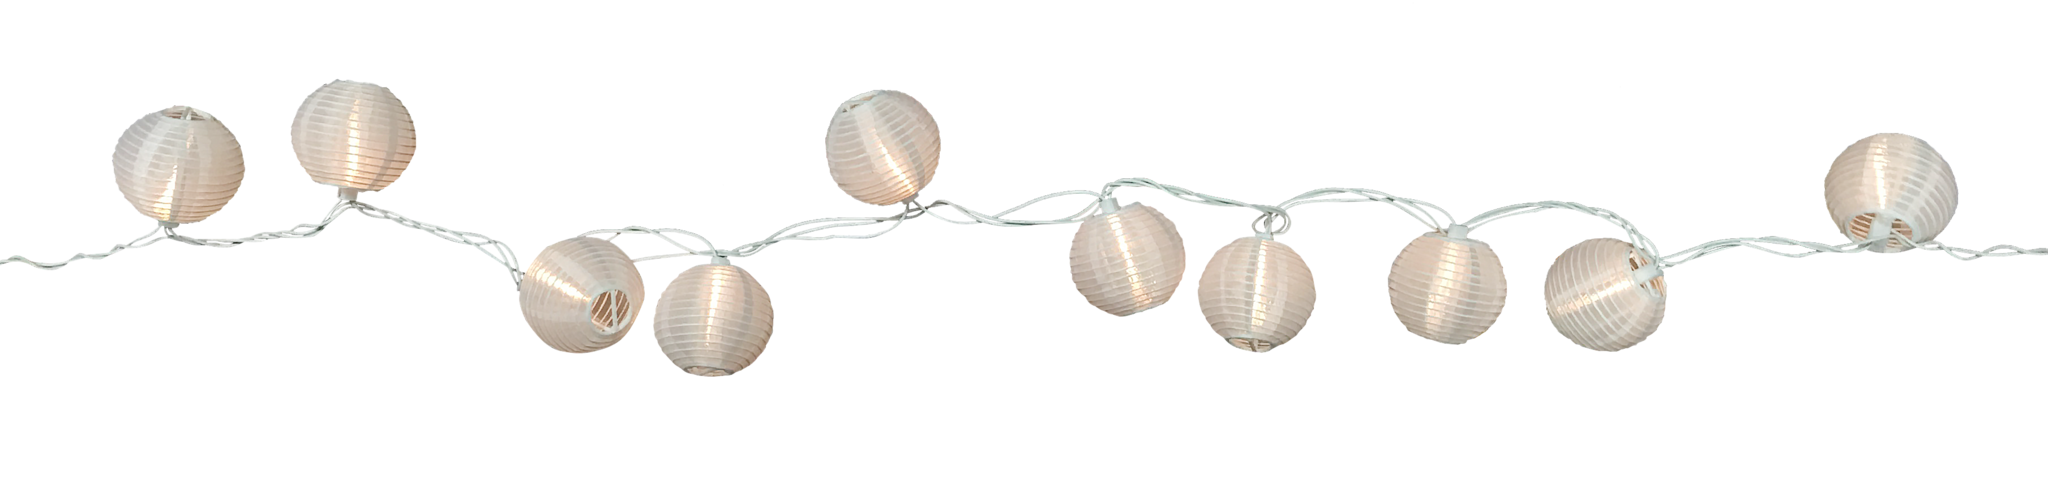 Seafoam Round Paper Lanterns